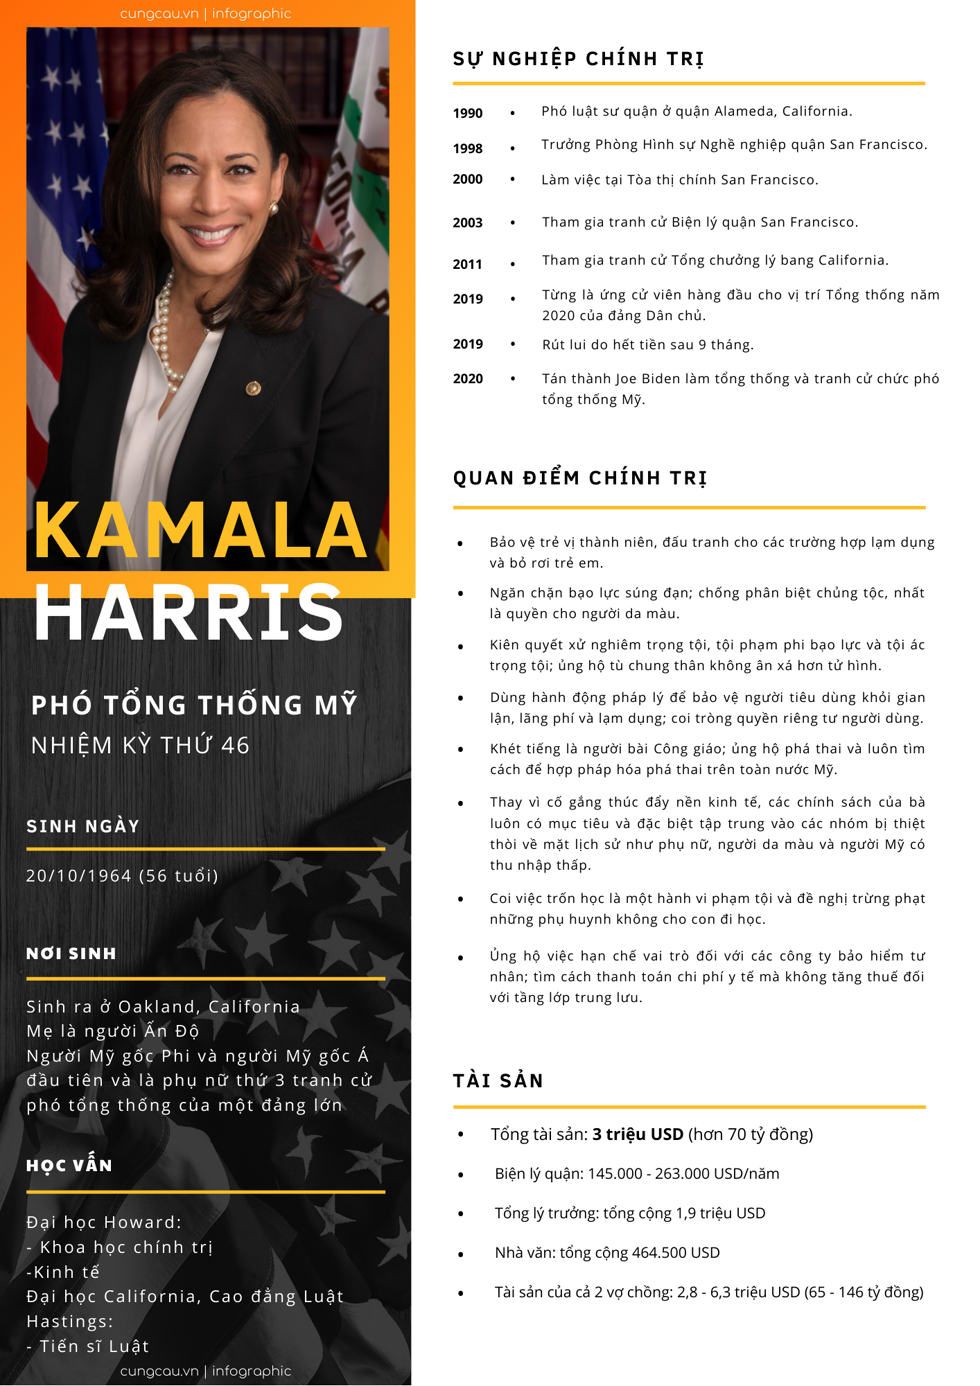 Hồ sơ Kamala Harris.